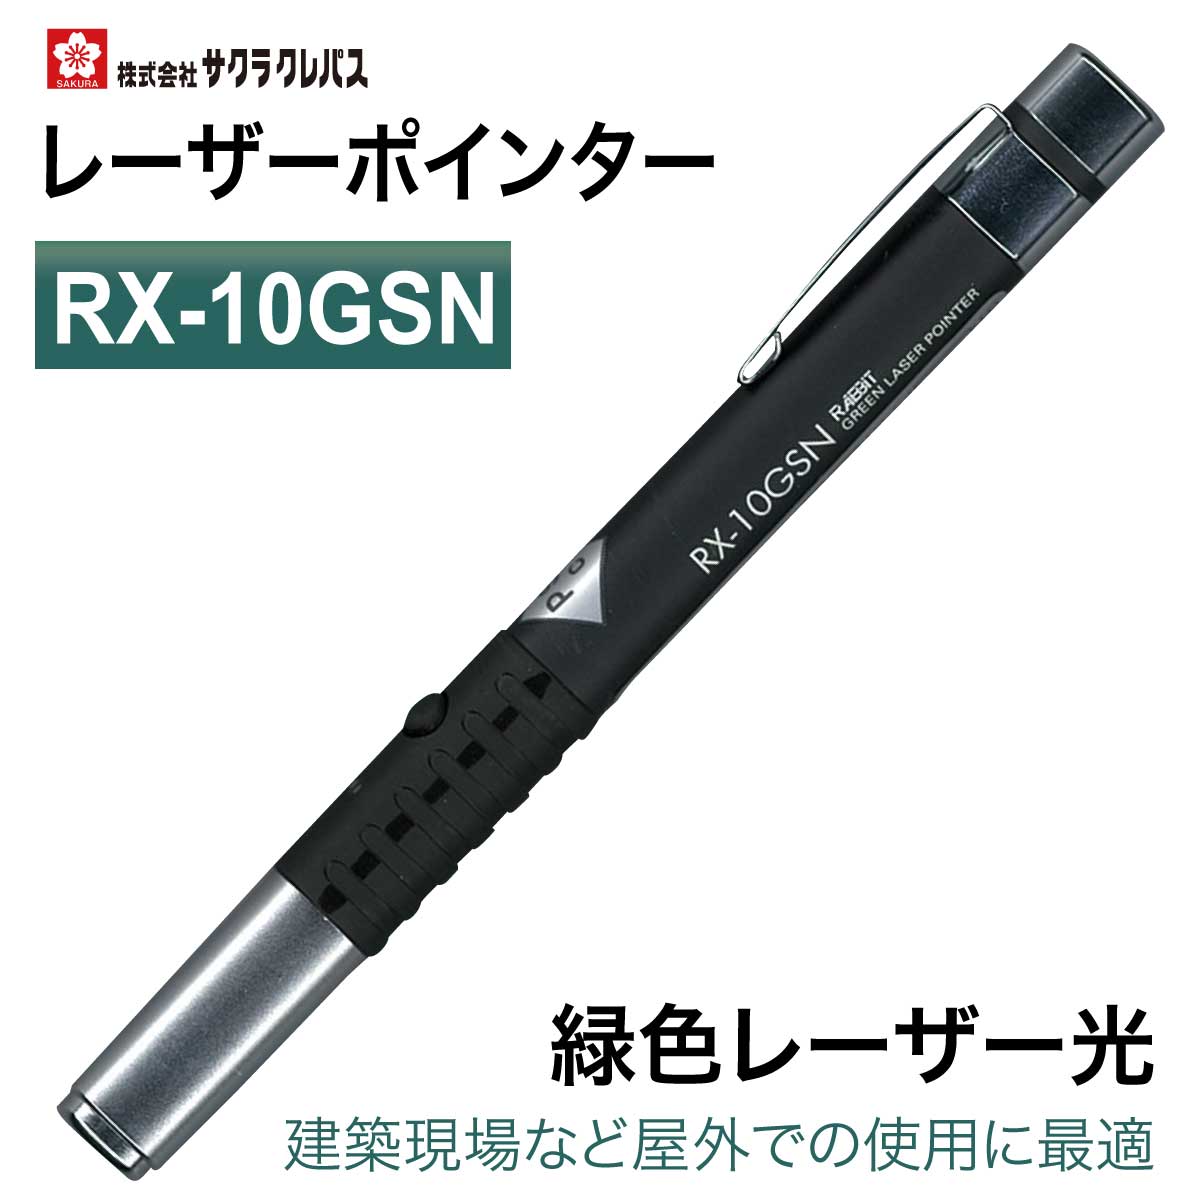 【特価品 在庫限り】 サクラクレパス レーザーポインター 緑色レーザー光 ペン型 ペンタイプ ギフト プレゼント プレゼン RX-10GSN